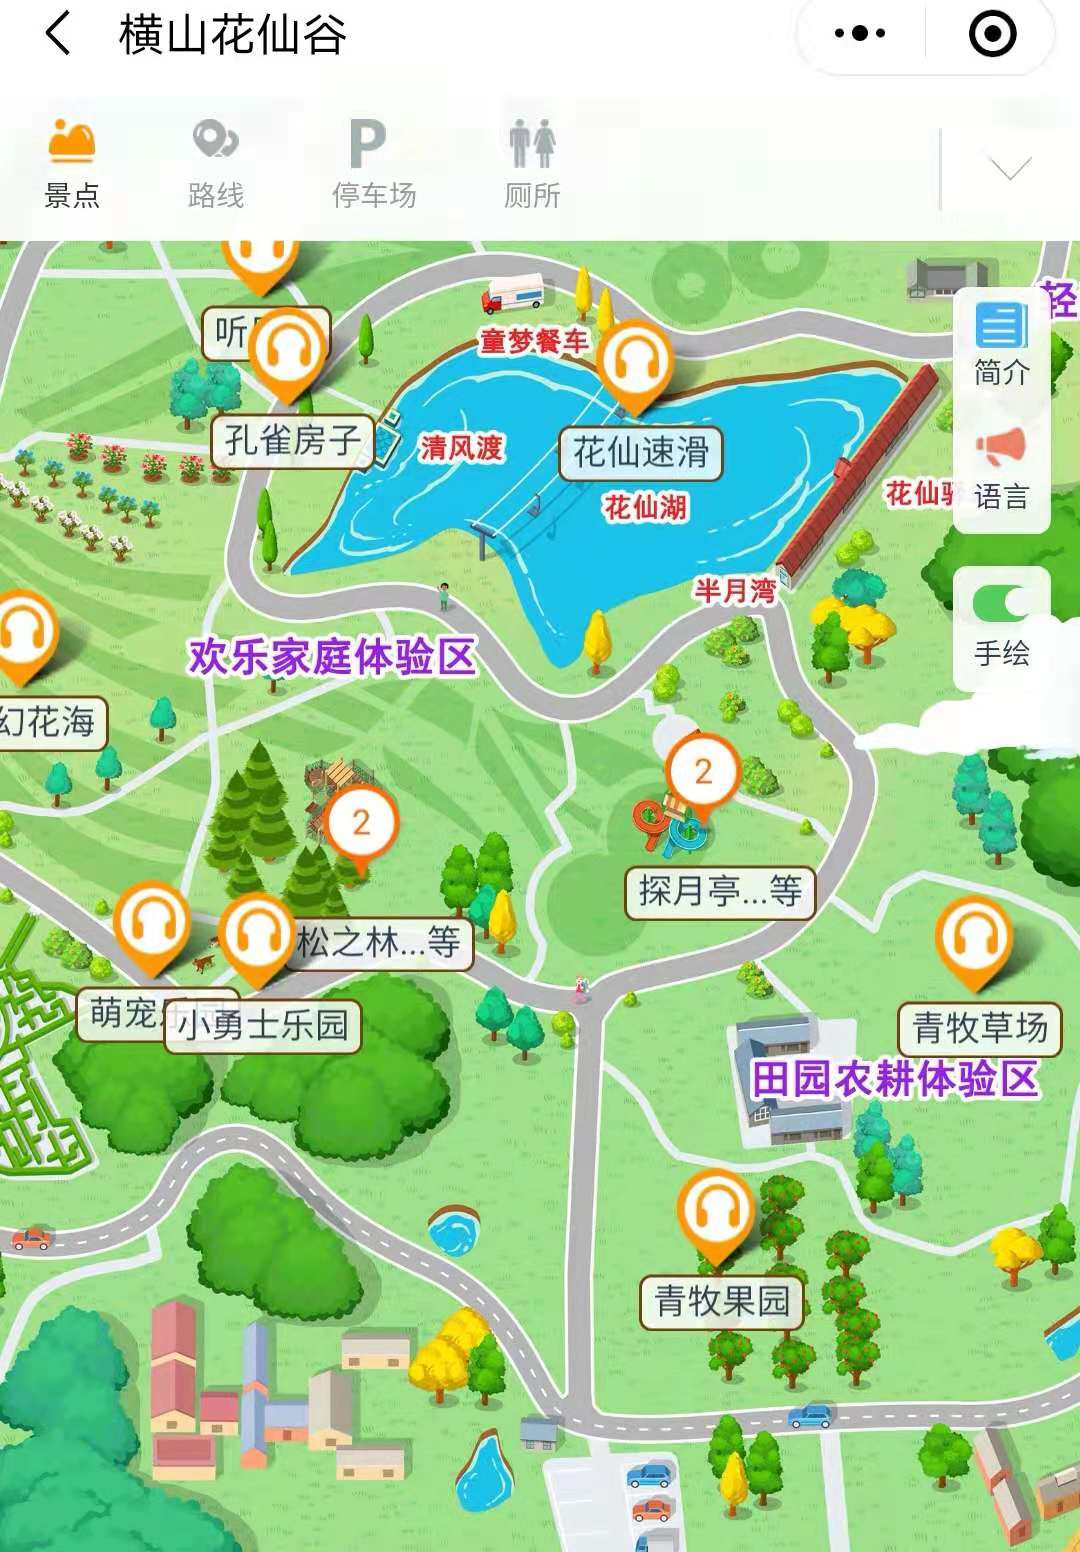 2021横山花仙谷景区手绘地图，电子导览，语音讲解系统上线.jpg